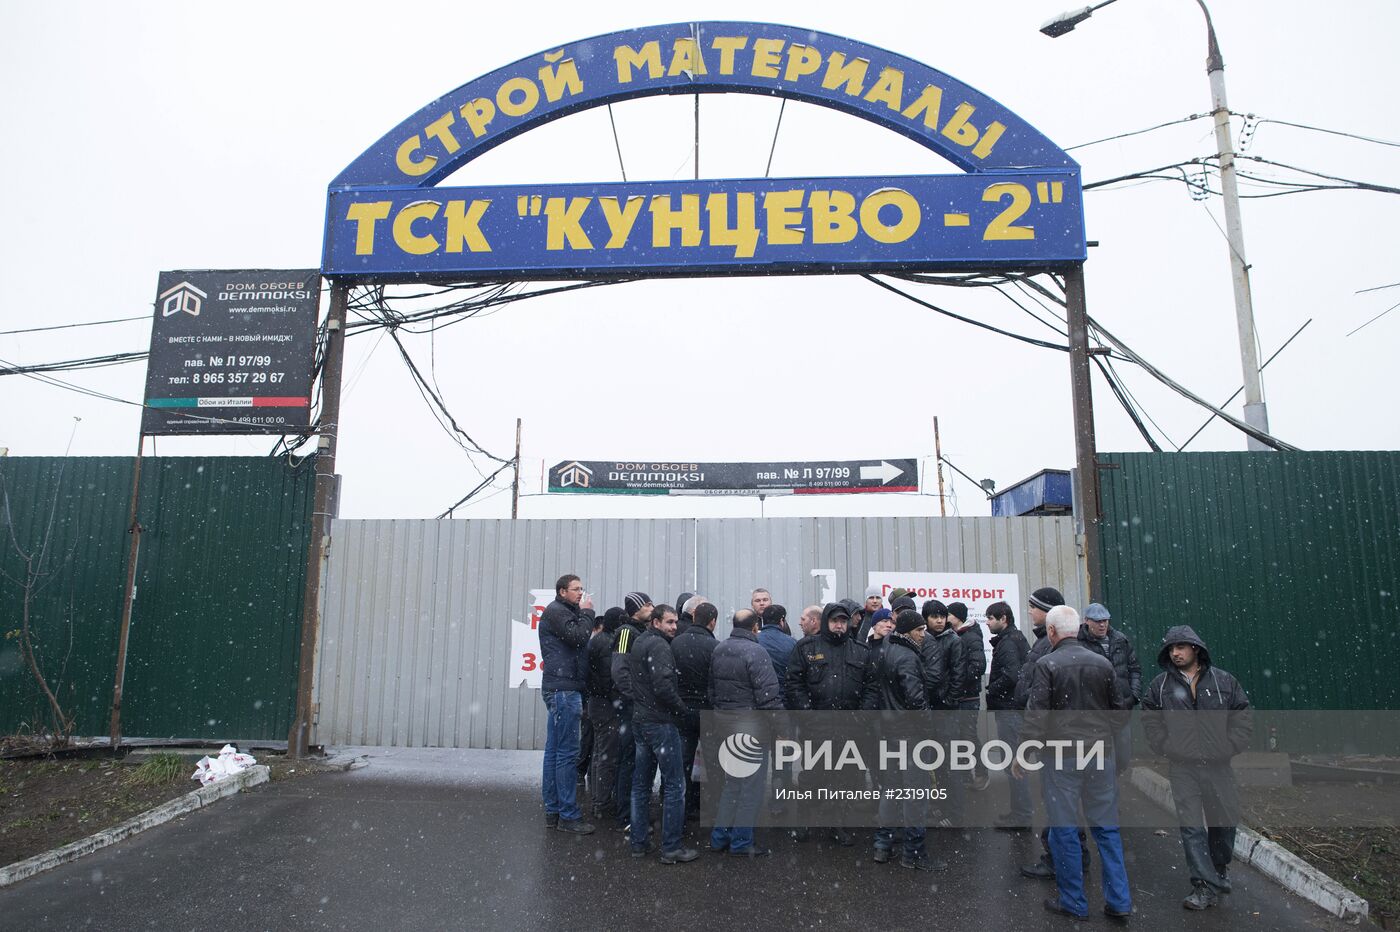 Cтроительный рынок "Кунцево-2" закрыт